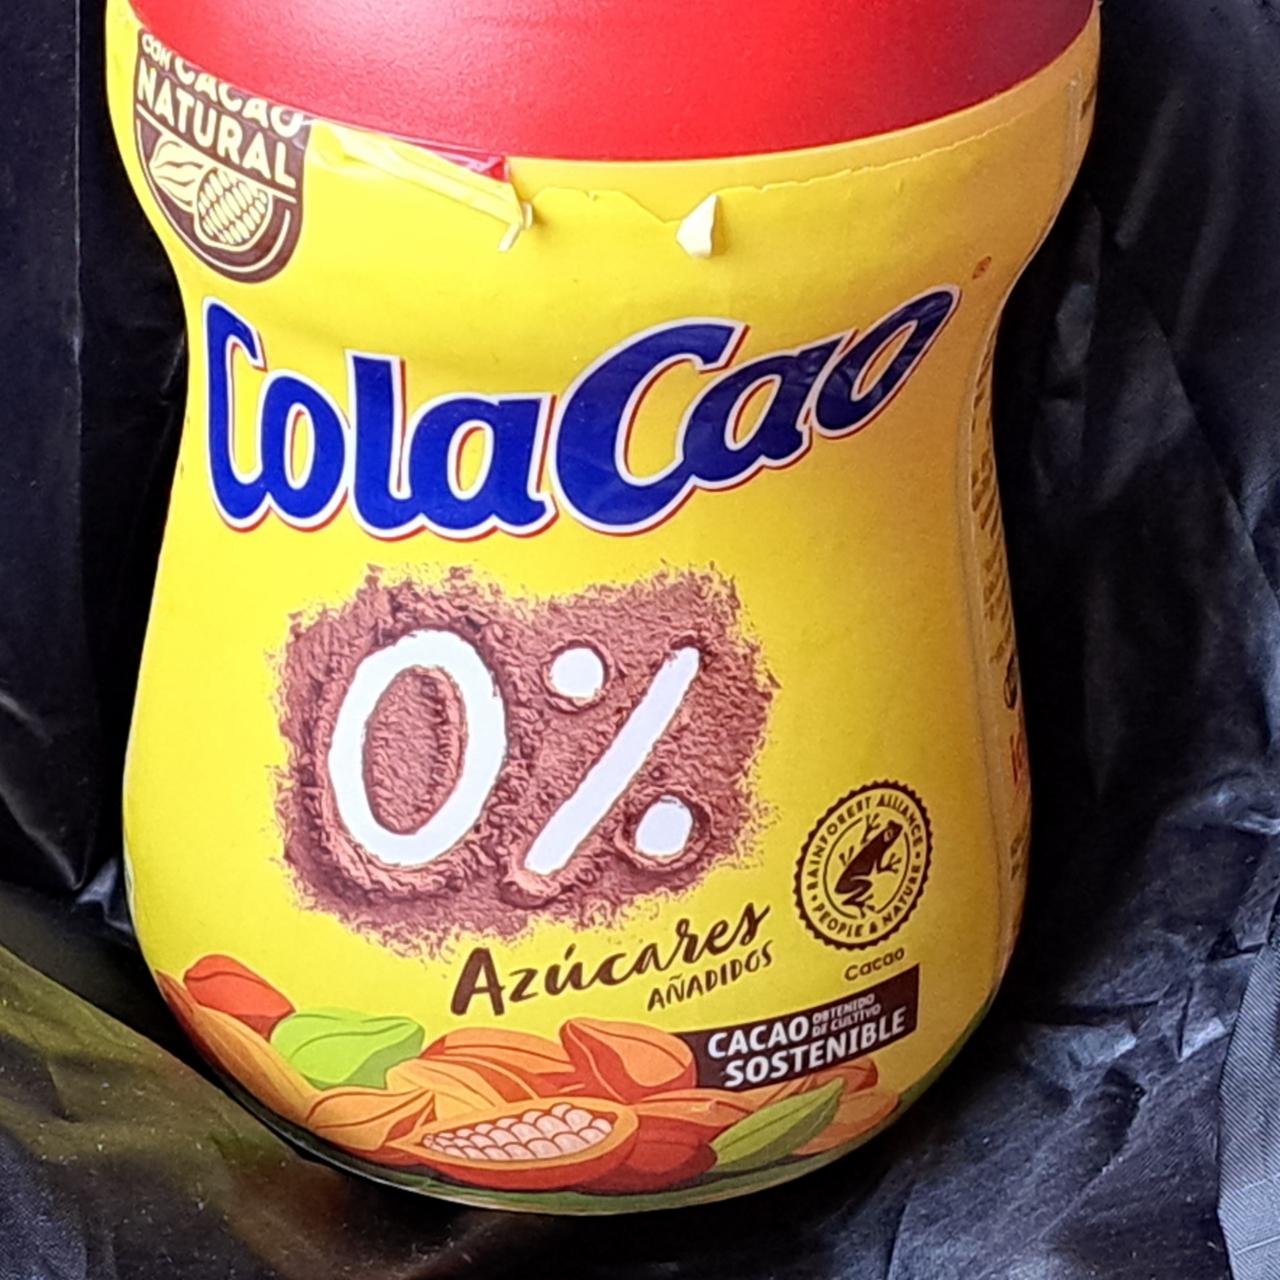 ColaCao 0% (hotový nápoj) Azúcares - kalorie, kJ a nutriční hodnoty